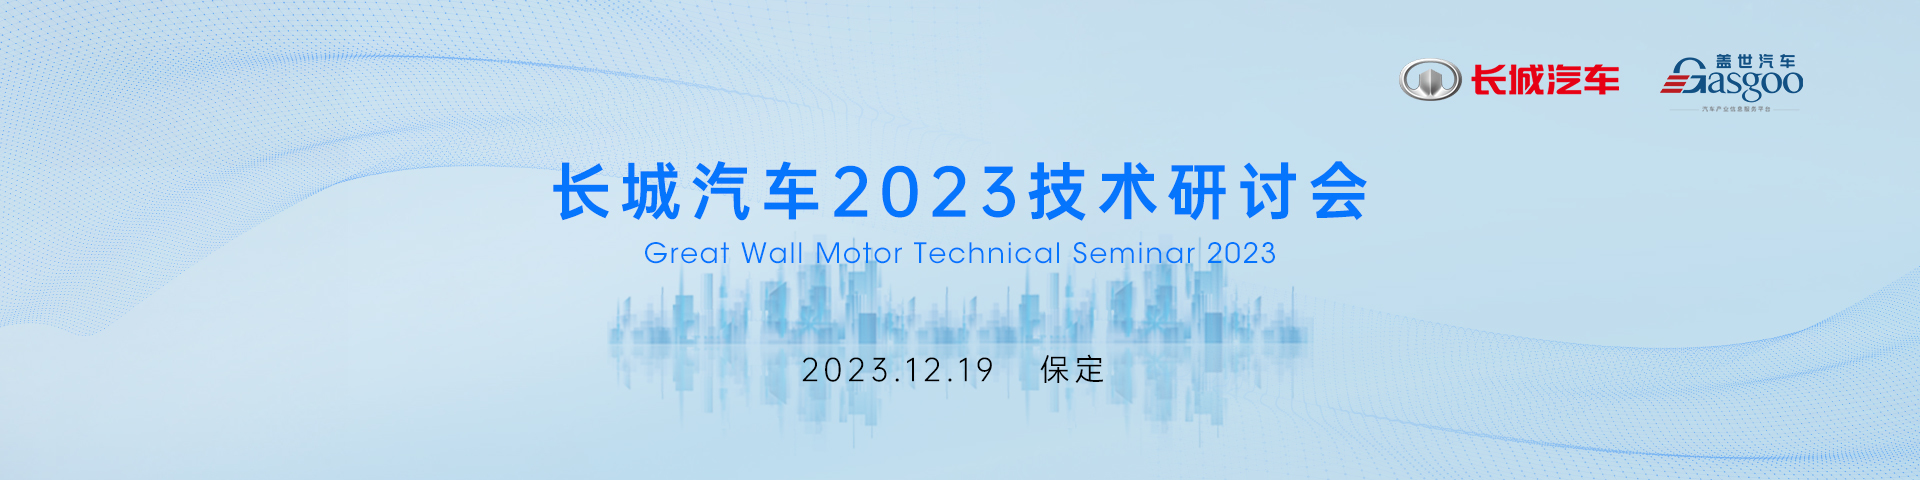 长城汽车2023技术研讨会